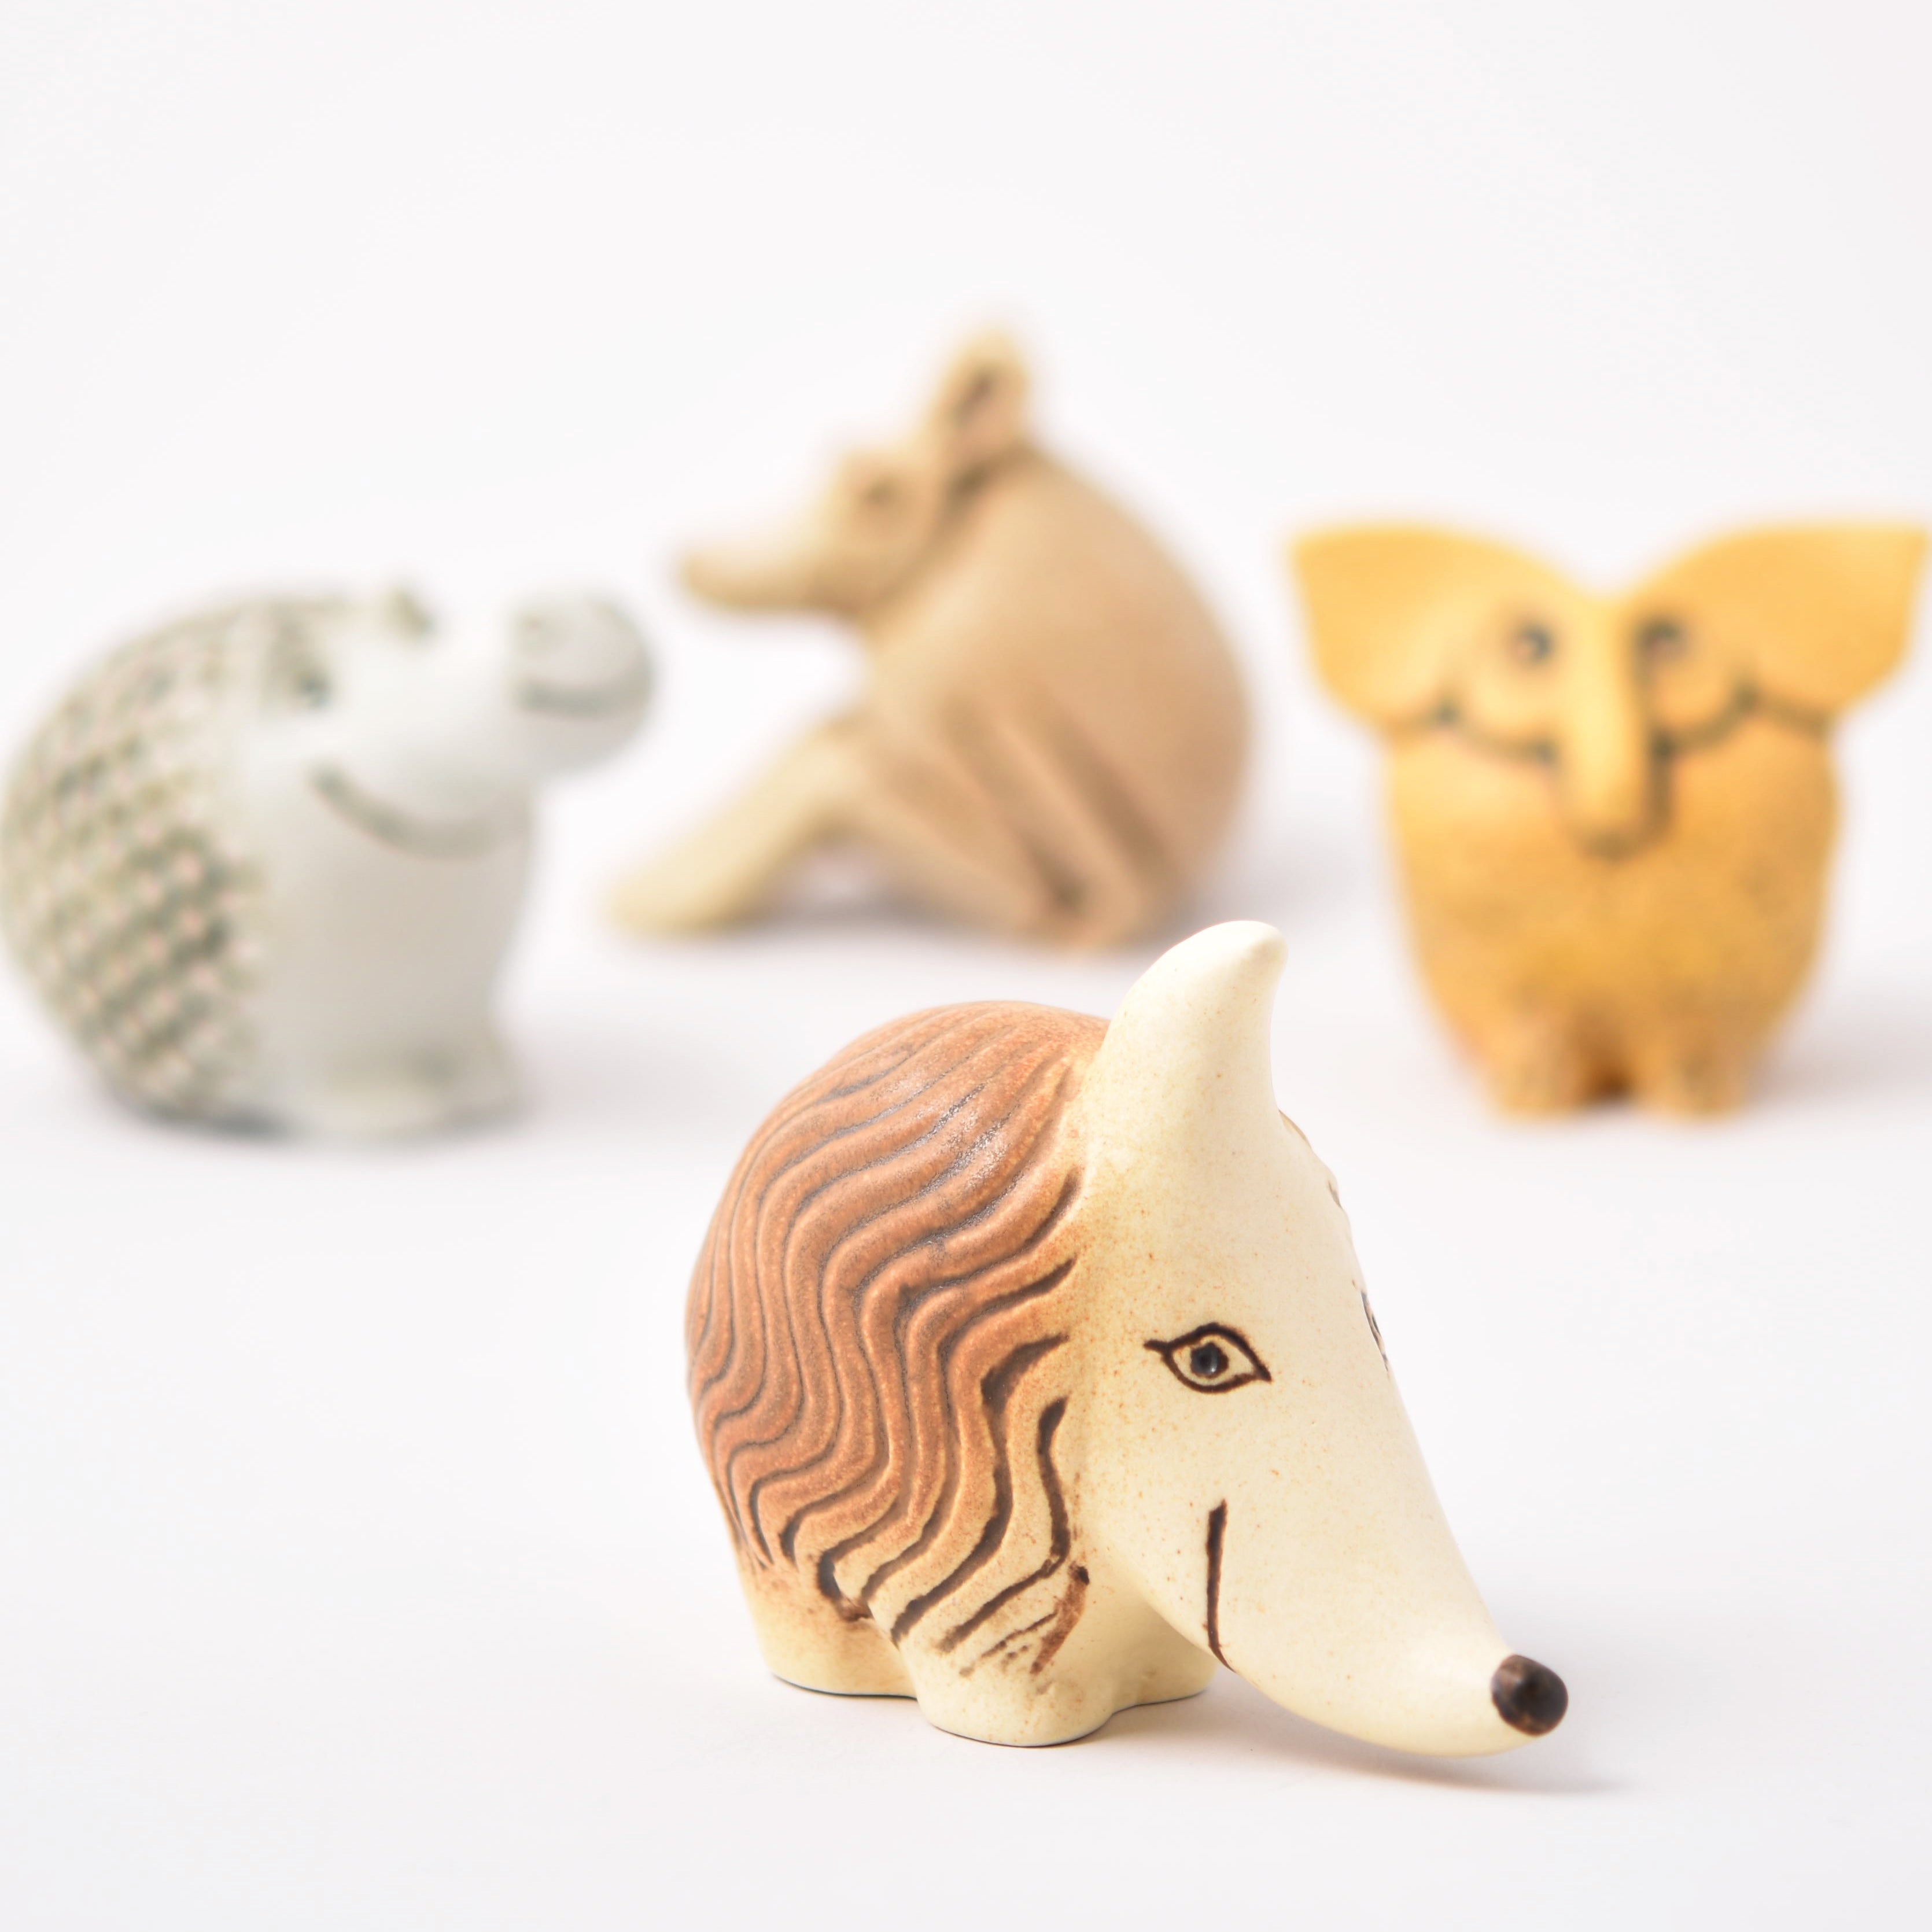 fyra keramikfigurer av Lisa Larson från serien Okända djur. Foto: Amanda Wendelius Nyström/Nationalmuseum